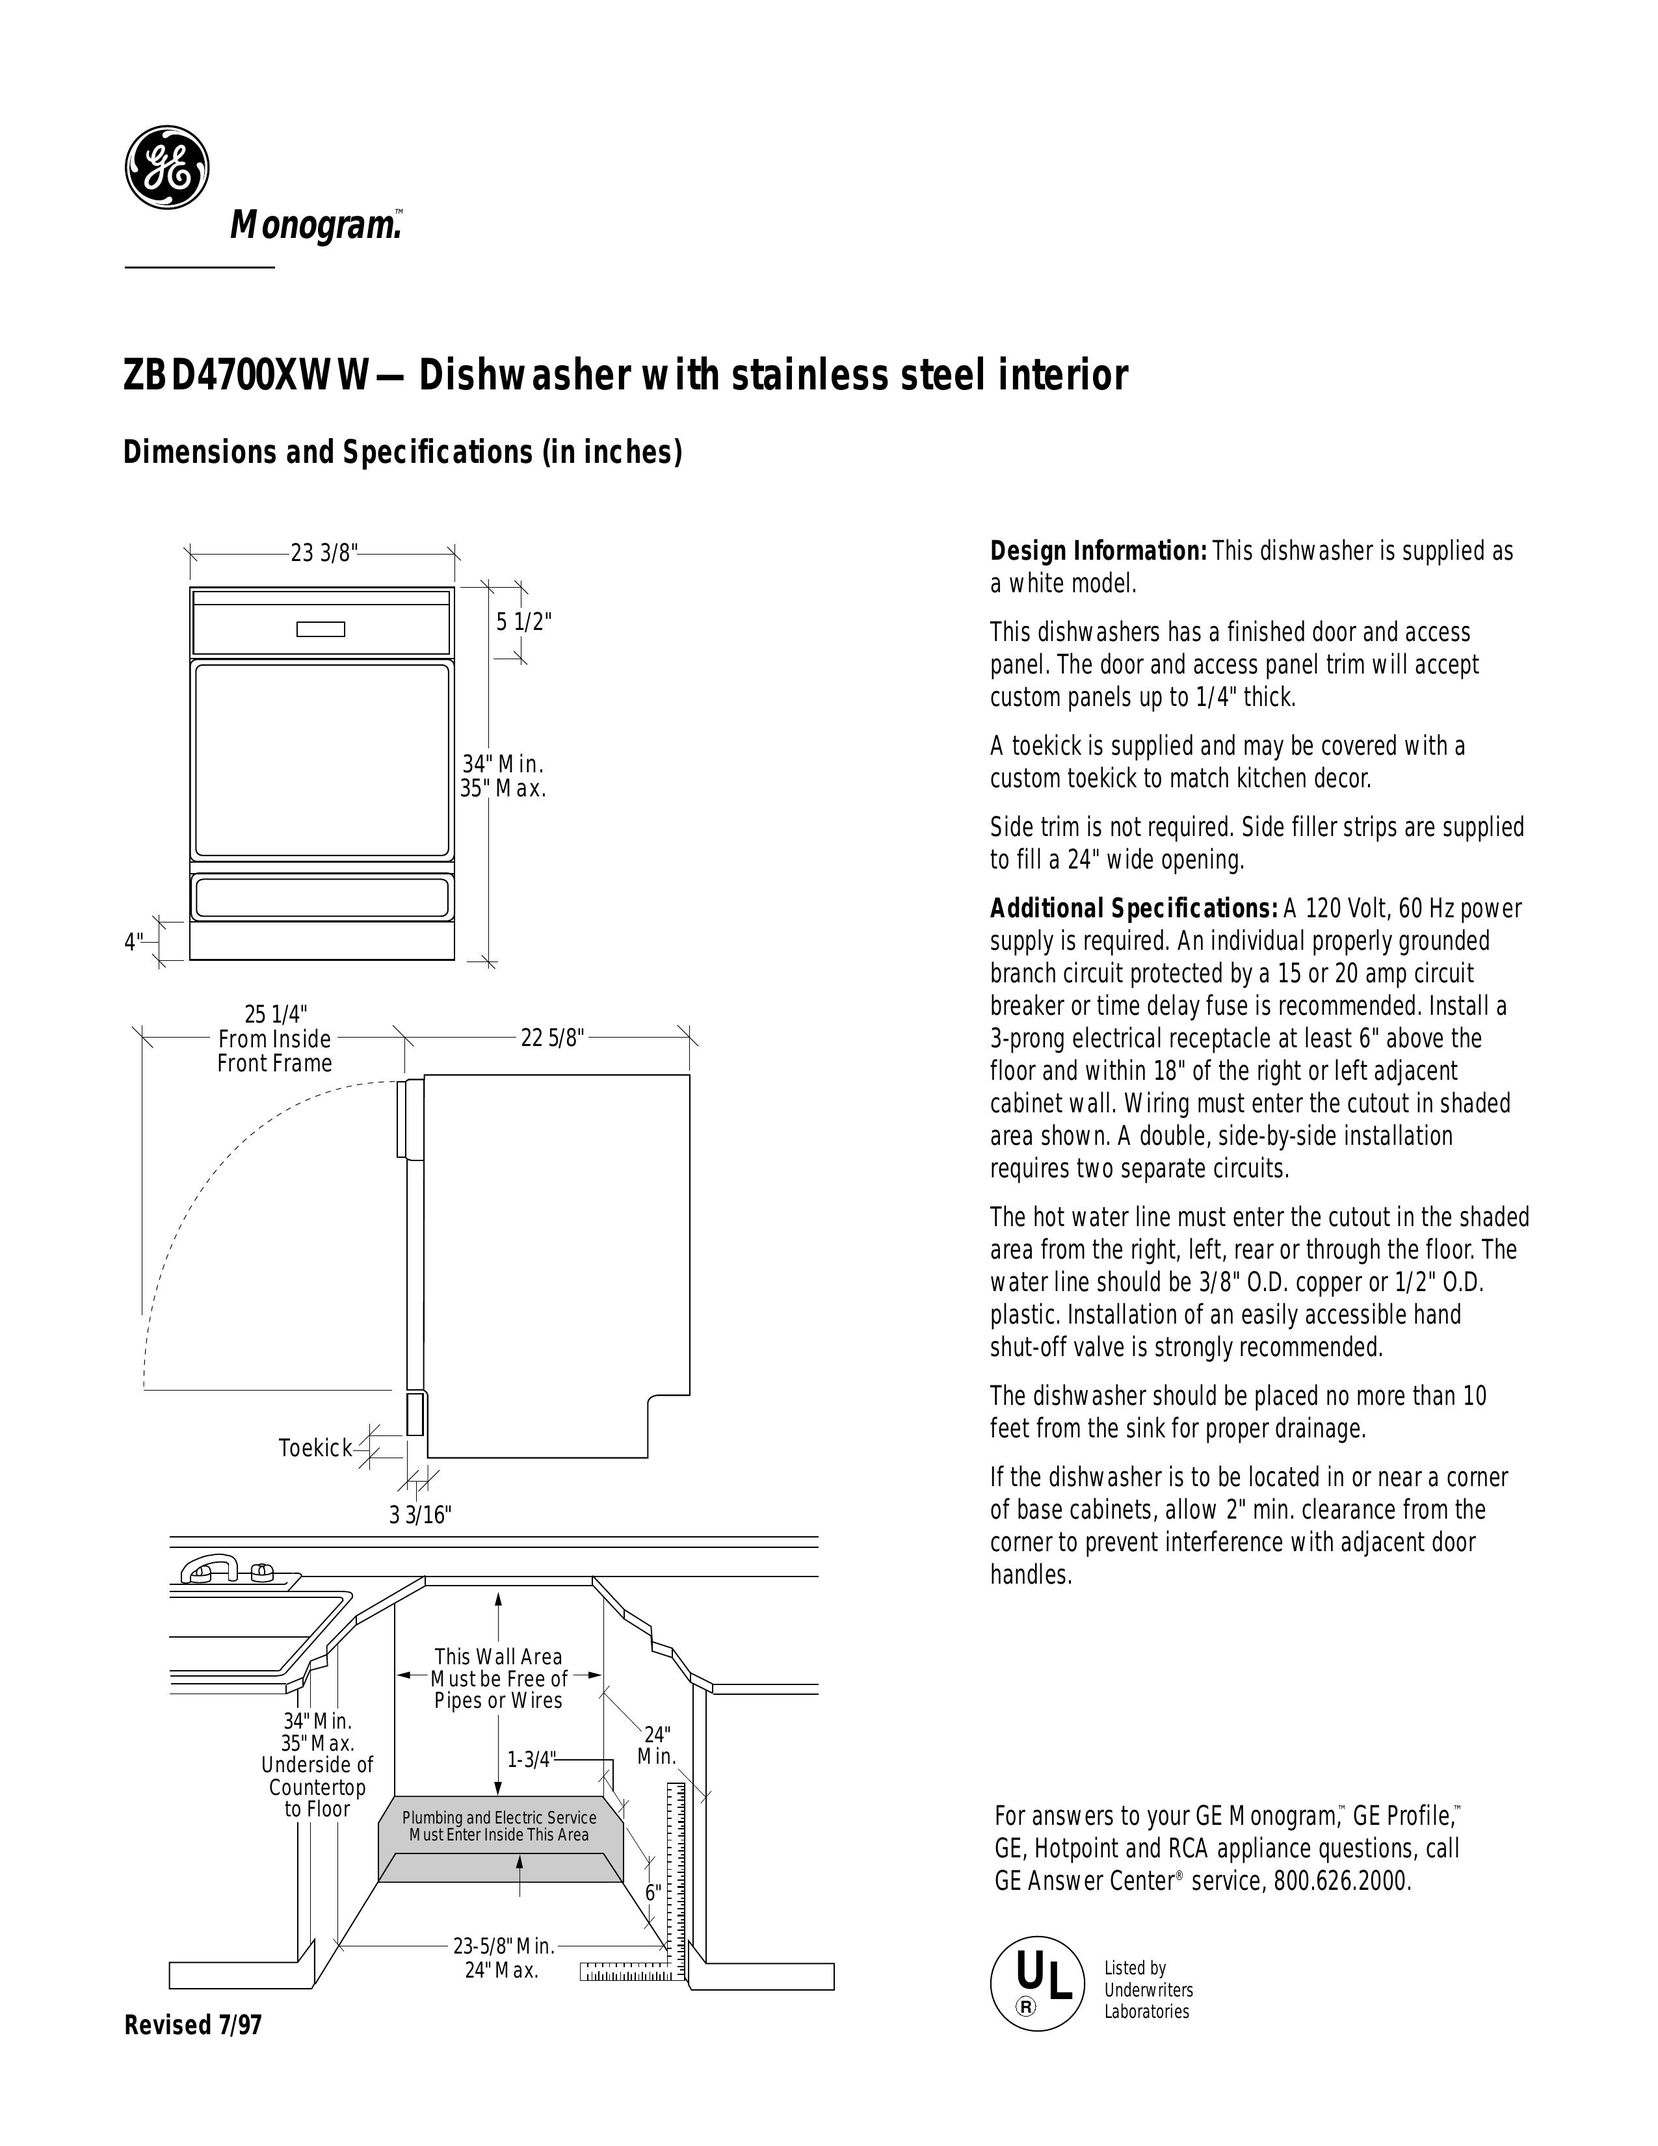 GE Monogram ZBD4700XWW Barcode Reader User Manual